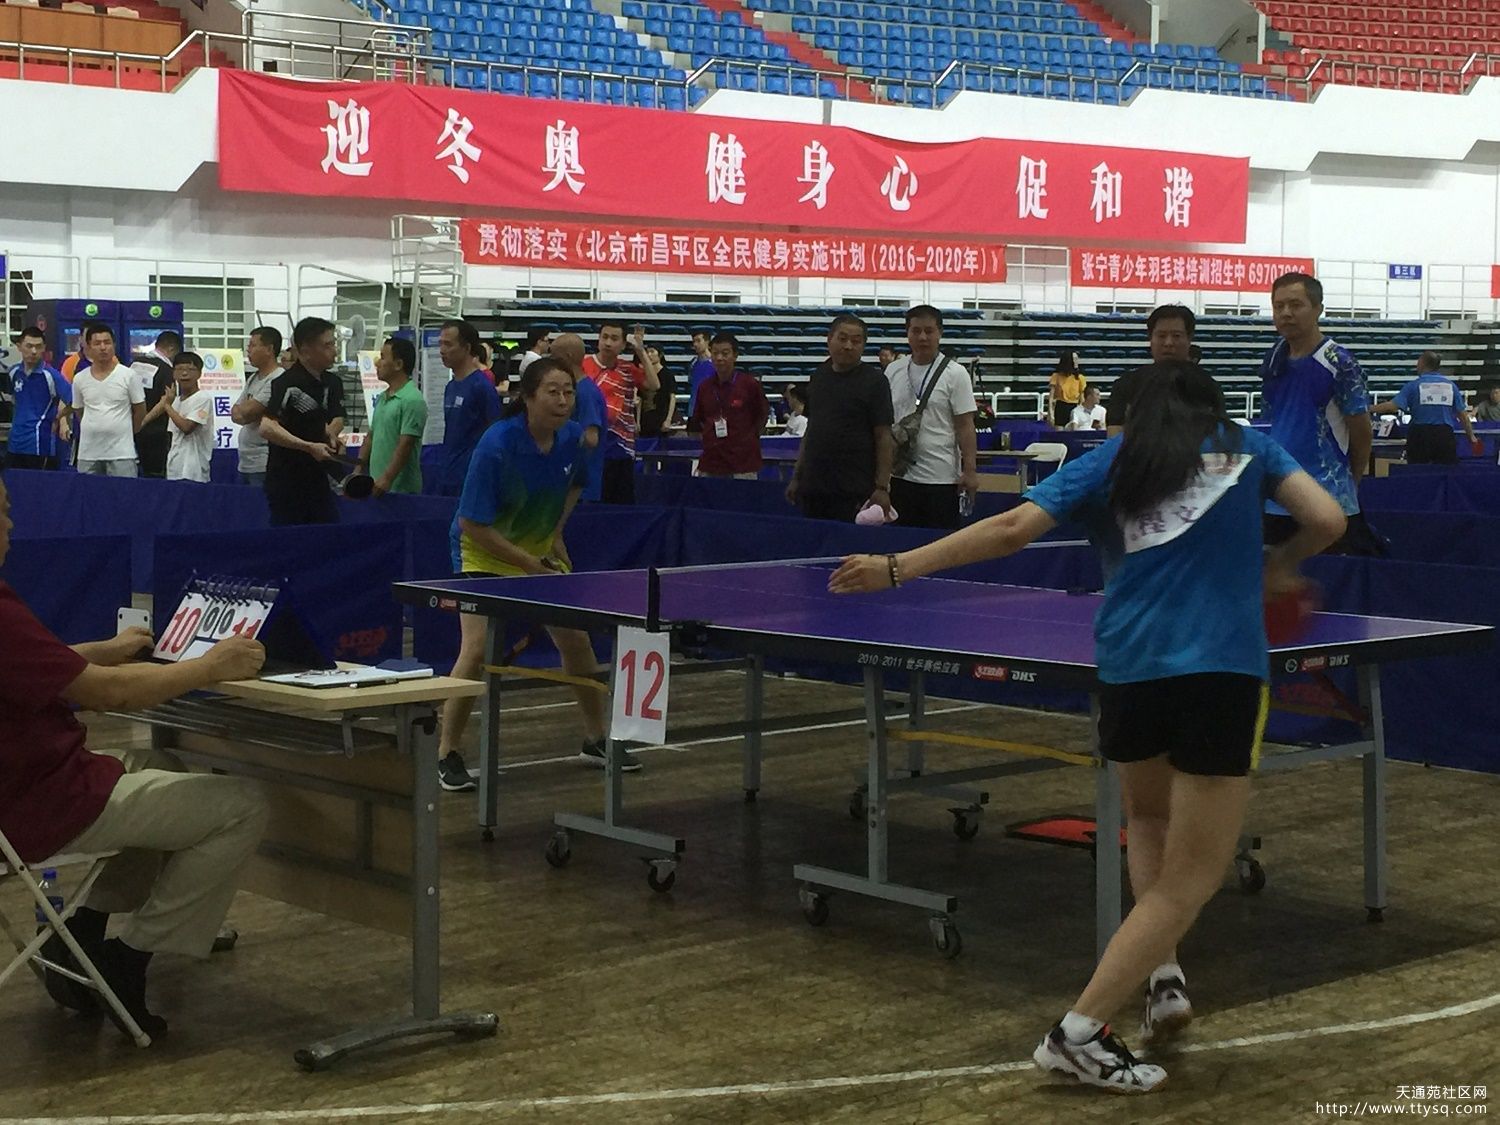 天北街道组织参加昌平区第十二届“和谐杯”乒乓球比赛